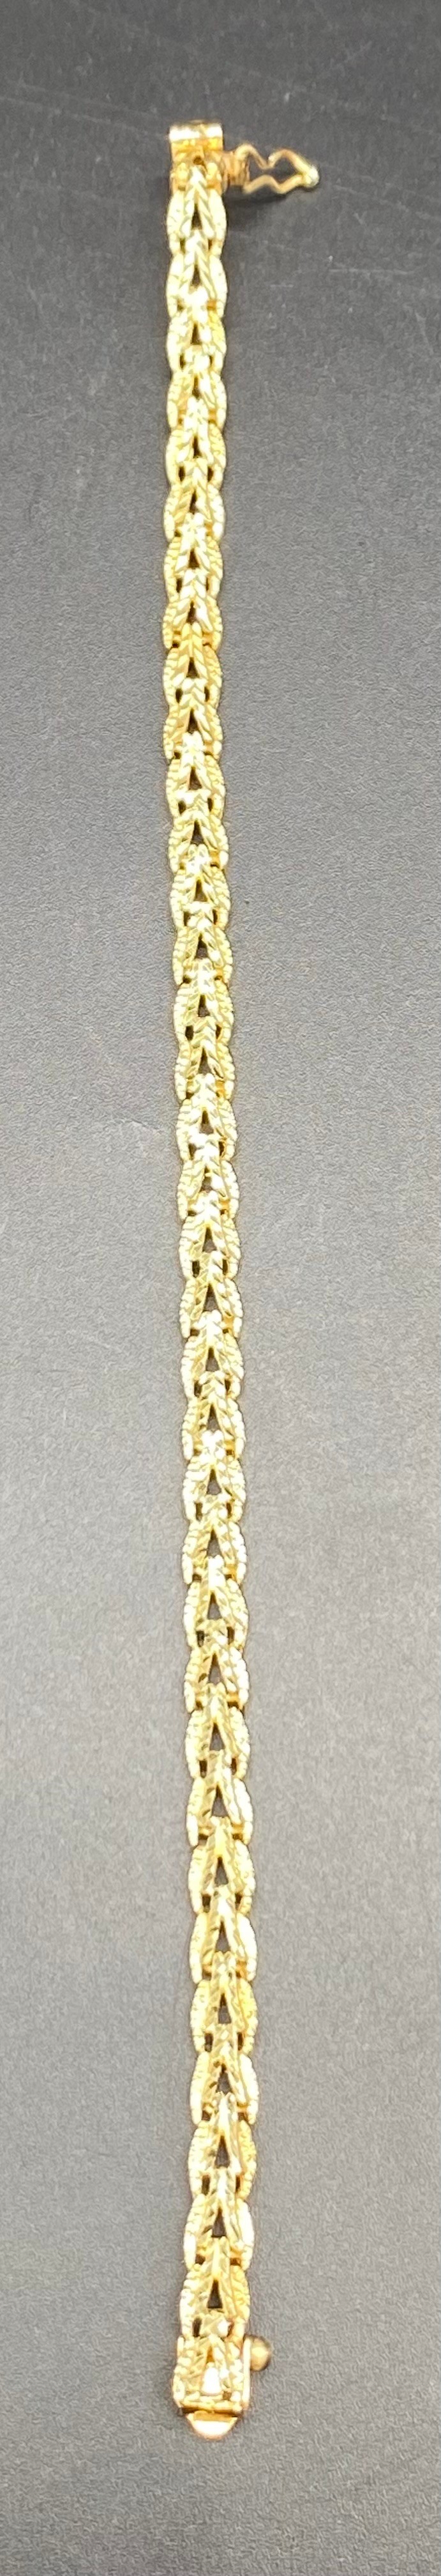 14kt US hallmarked fancy linked bracelet [9.57] grams - Image 2 of 4